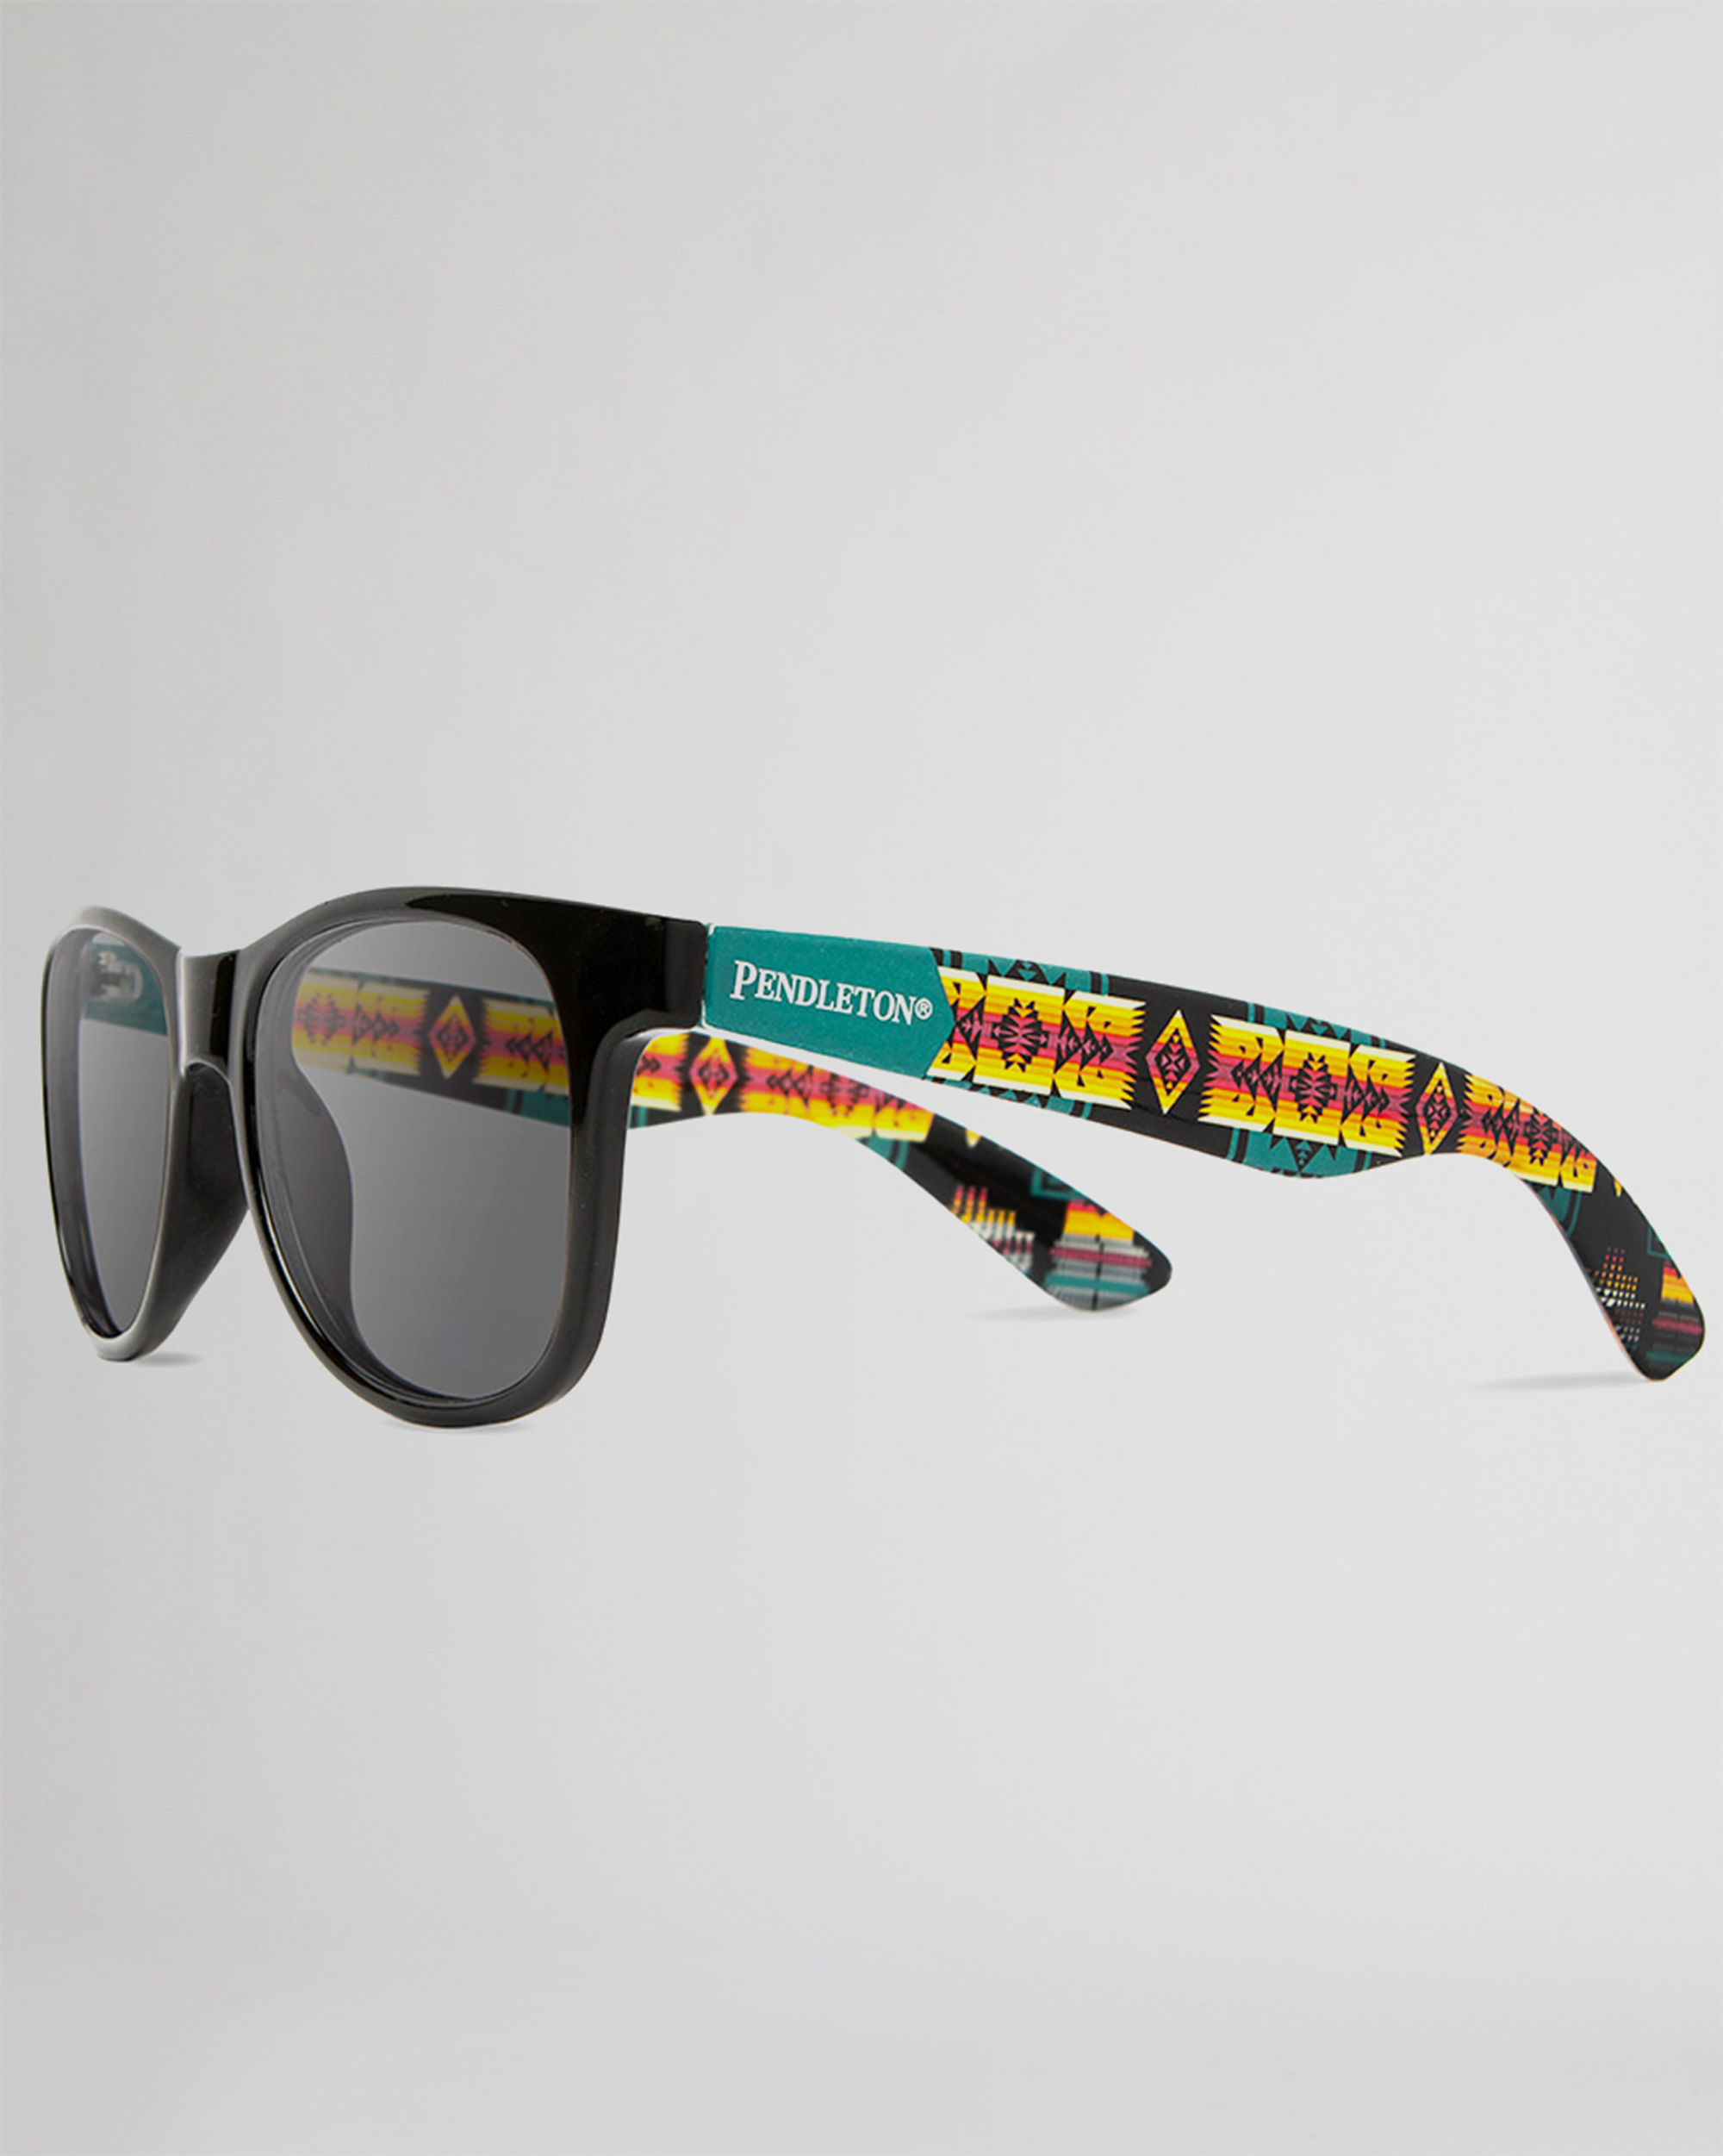 x Shwood Sunglasses Polarized Gabe Pendleton Pendleton |